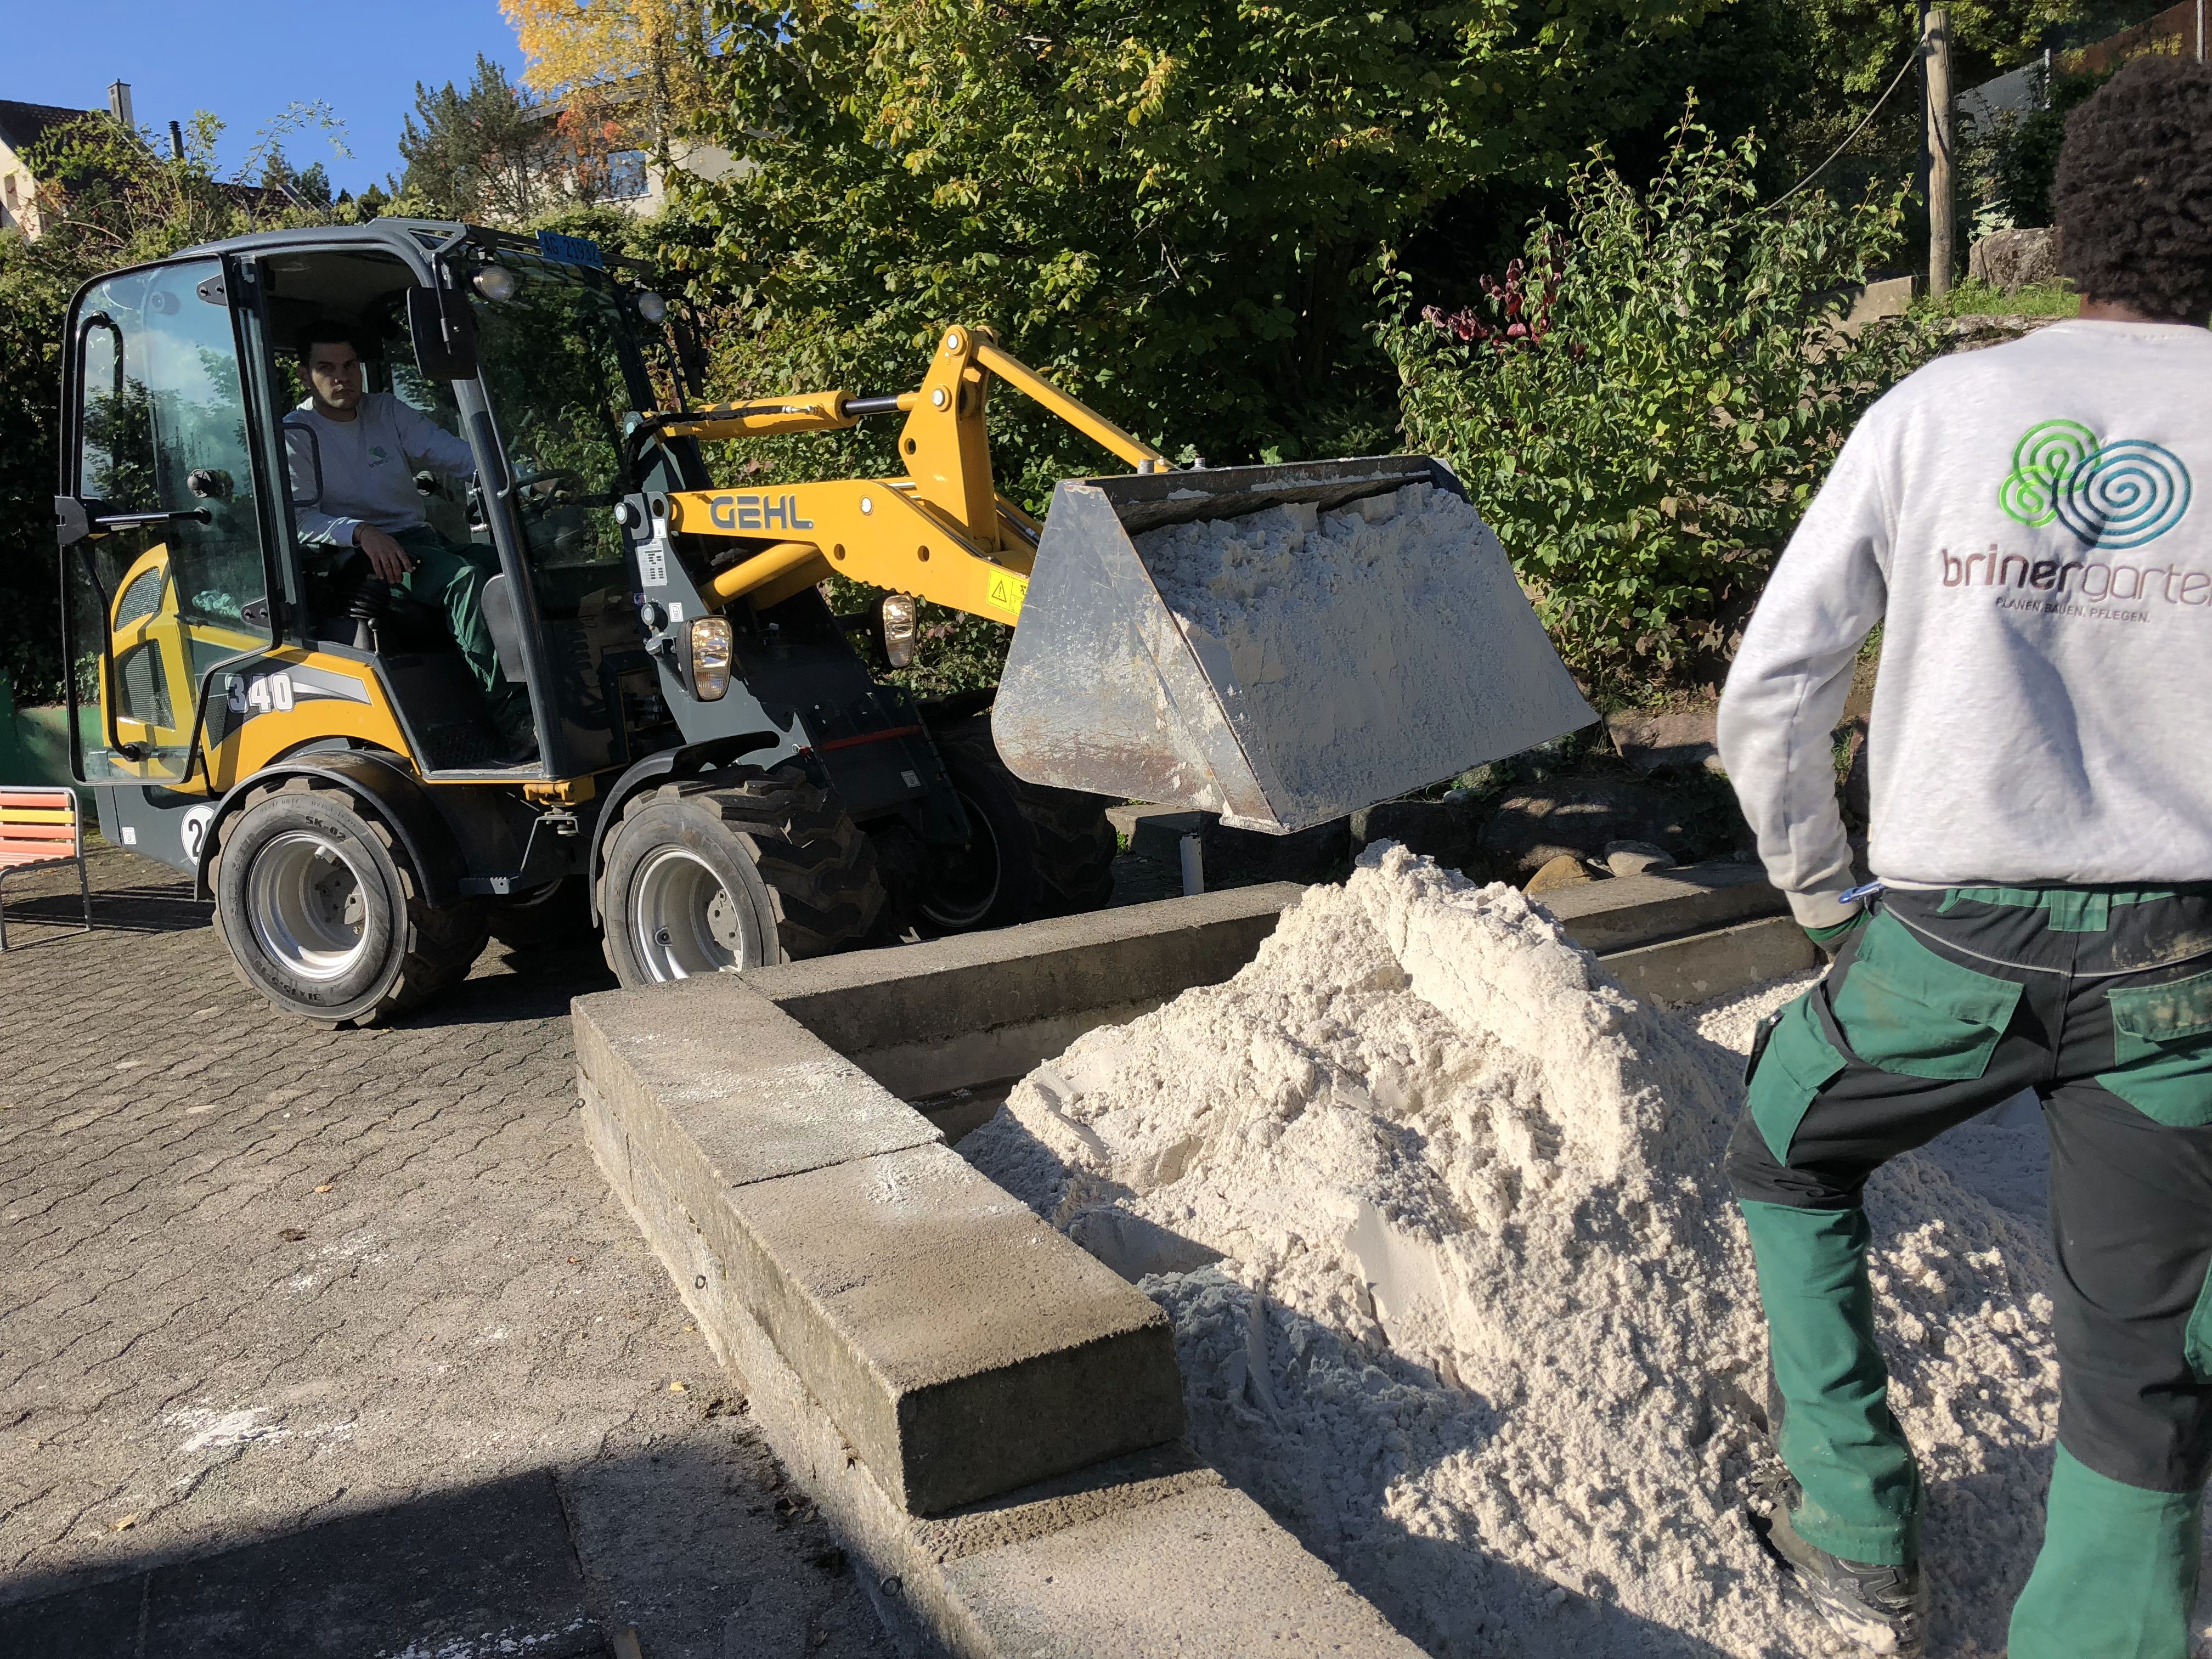 Bagger bringt Sand für Sandkasten gebaut von brinergarten